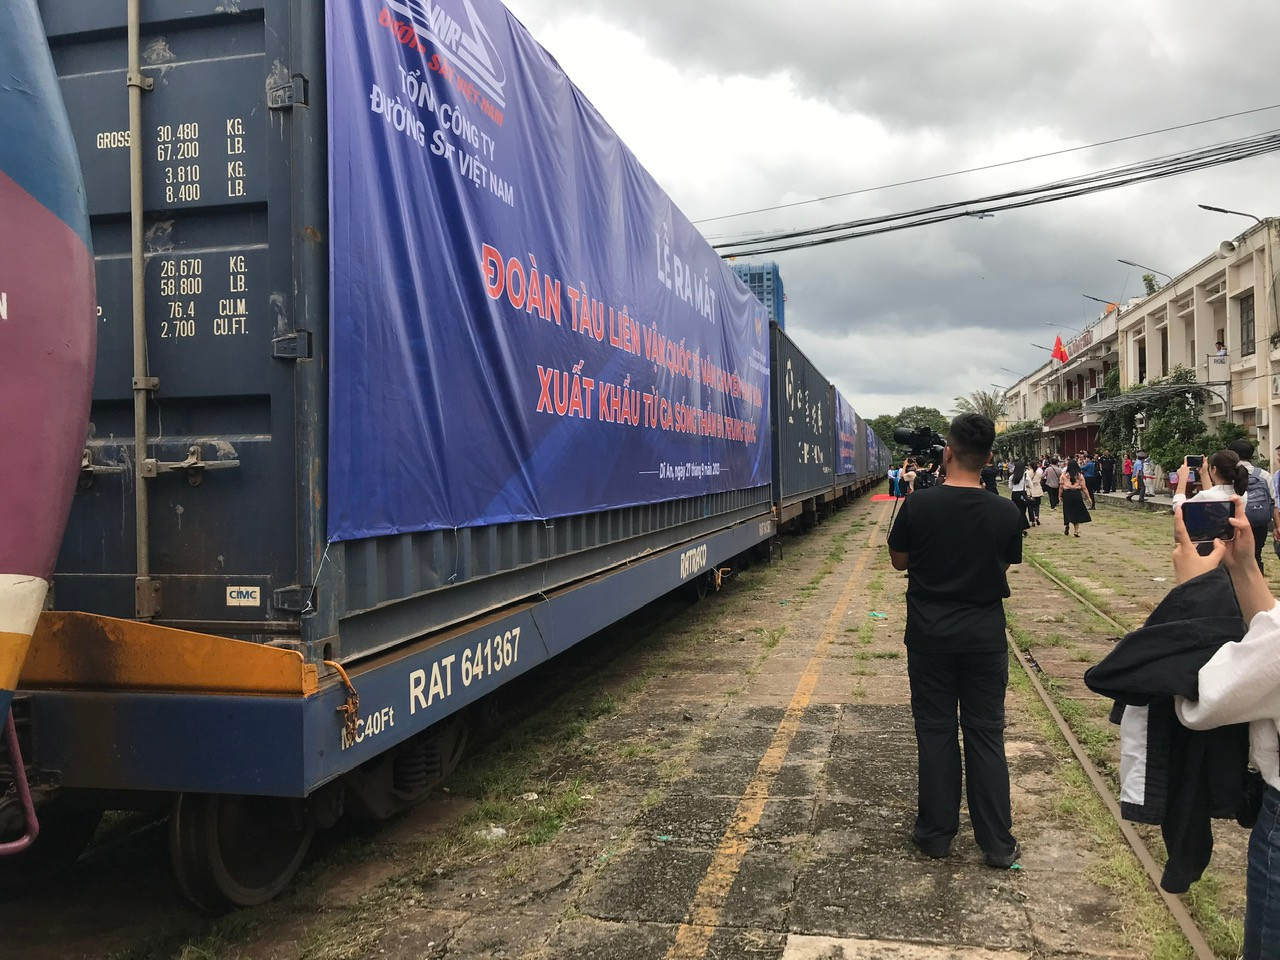 Việc ra mắt đoàn tàu liên vận quốc tế tại ga Sóng Thần sẽ giúp cho hàng hoá xuất khẩu các tỉnh khu vực Đông Nam bộ trở nên thuận lợi hơn.